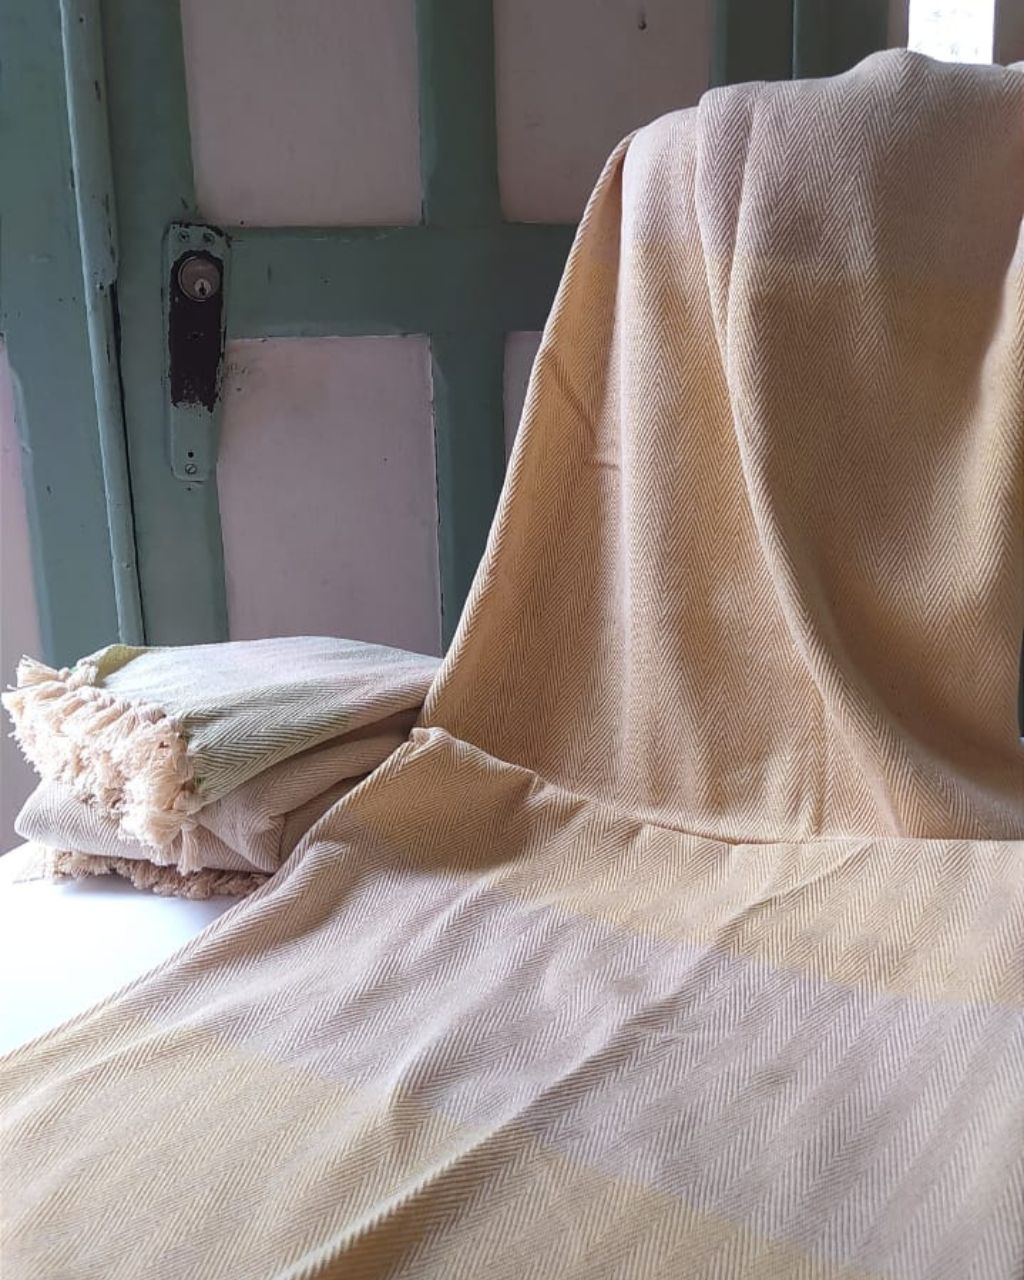 Mantas de algodón hechos por artesanos de la Sierra Nevada de Santa Marta, en color natural y amarillo.